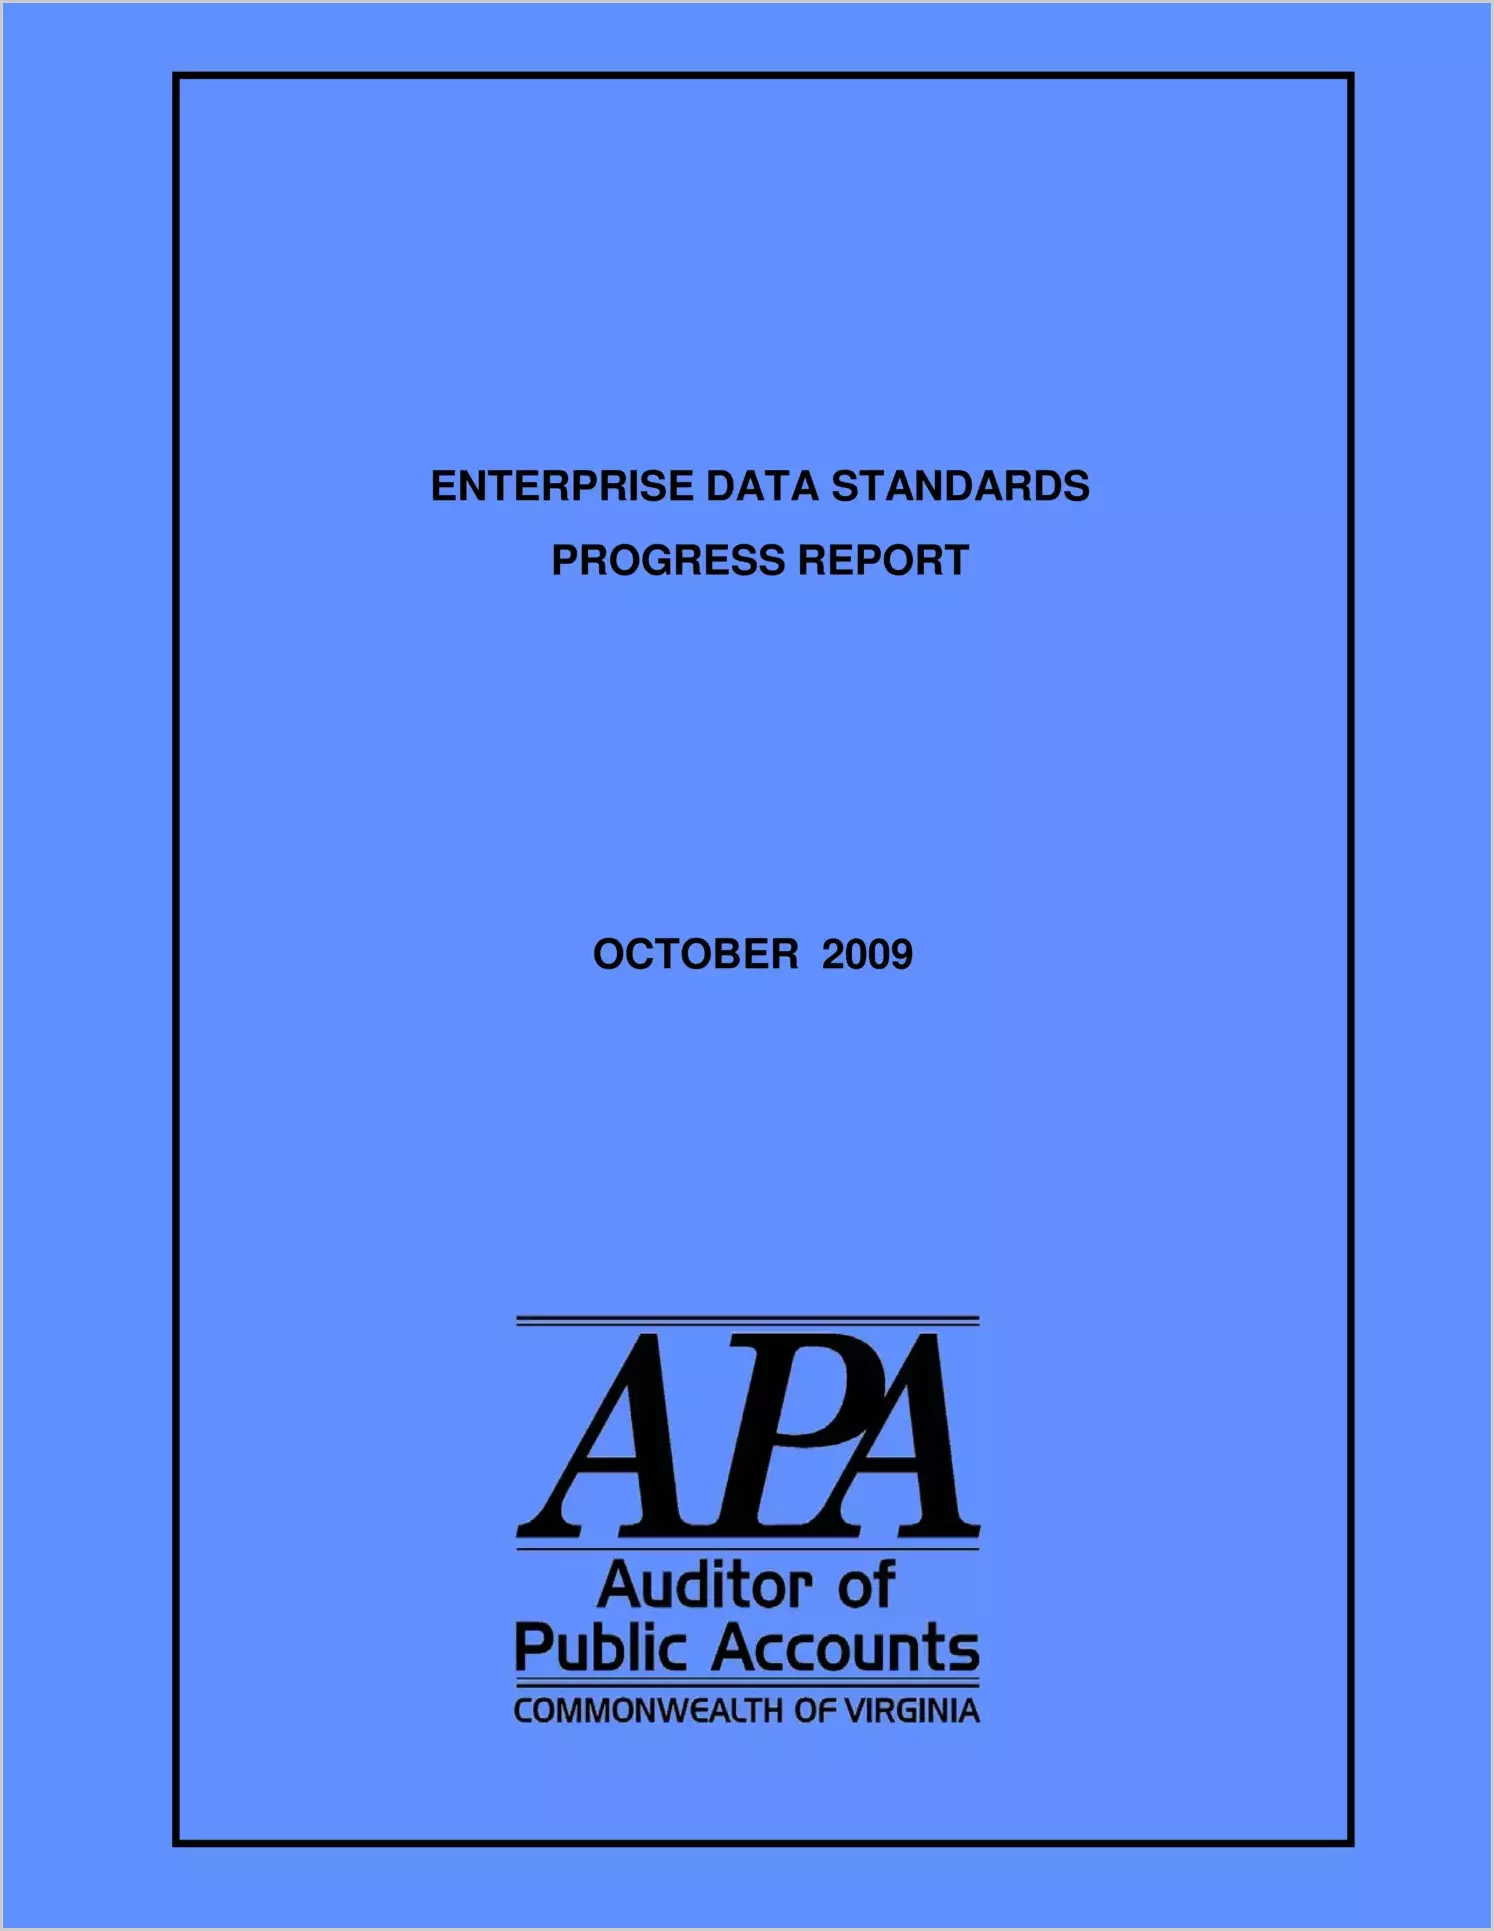 Enterprise Data Standards Progress Report for October 2009